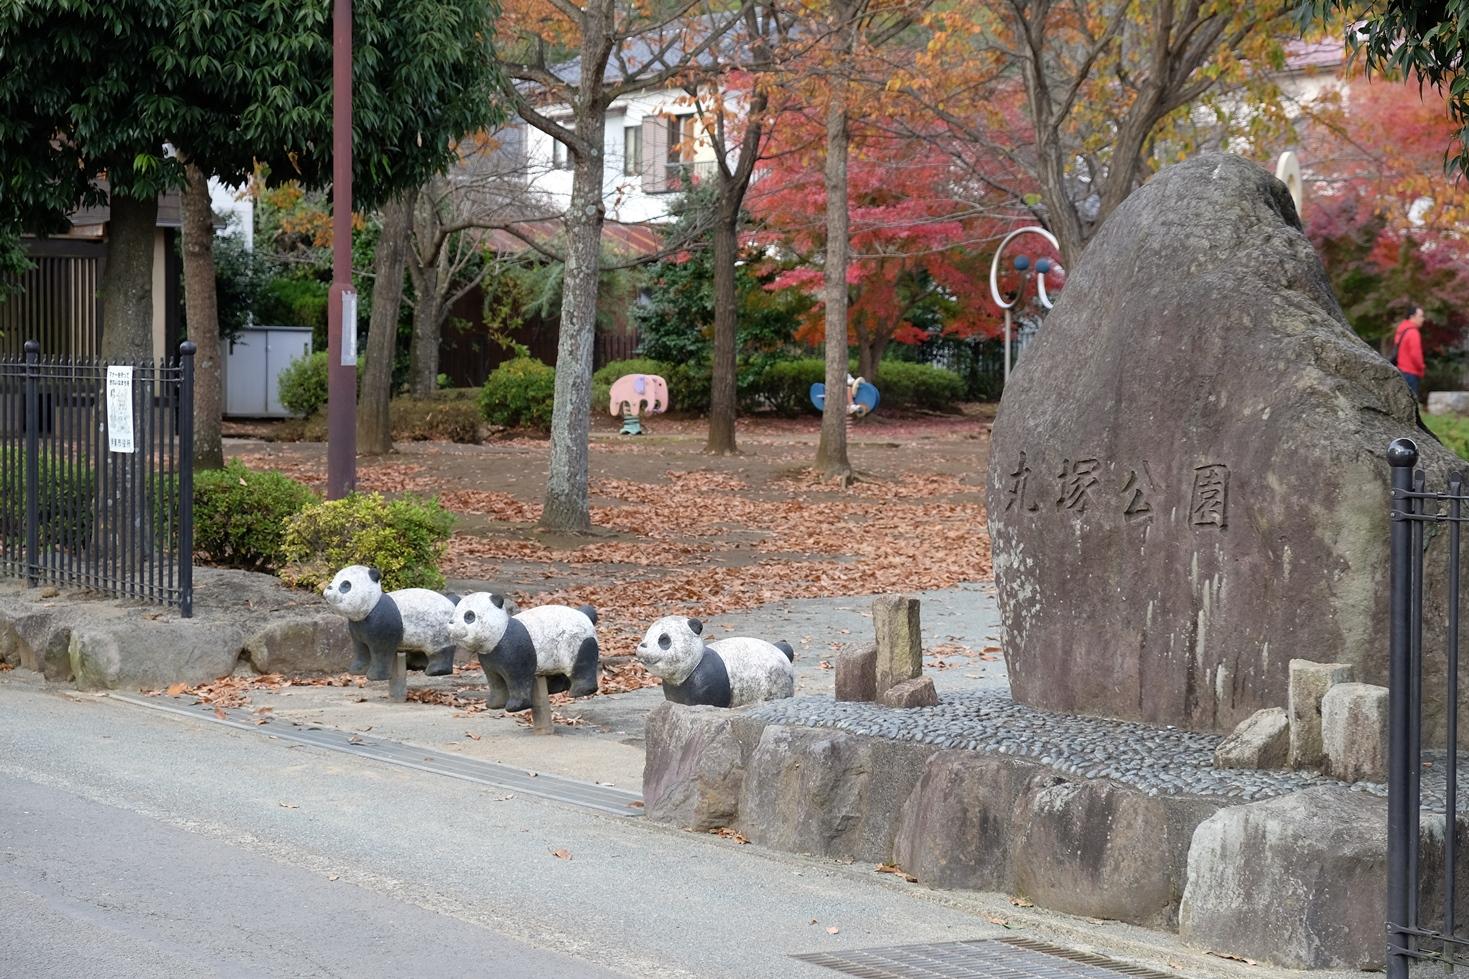 入口に大きな岩と、パンダの車止めが3つ並んでいる丸塚公園の入口の写真